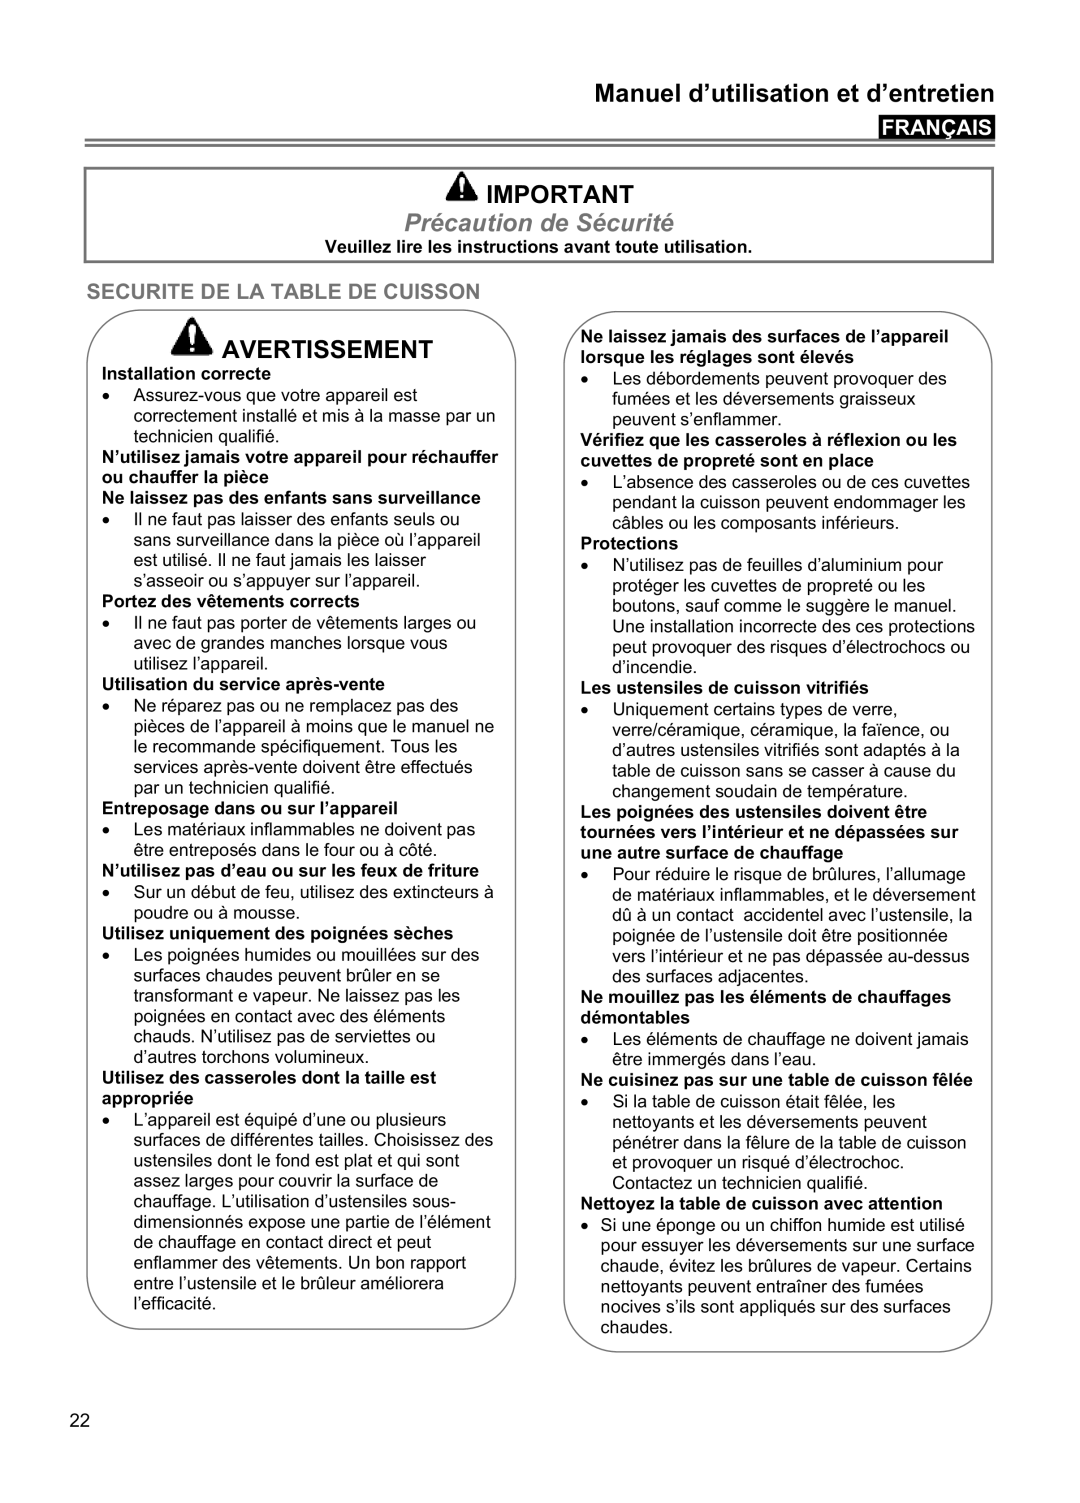 Blomberg CTE 36500 Précaution de Sécurité, Securite De La Table De Cuisson, Manuel d’utilisation et d’entretien, Français 